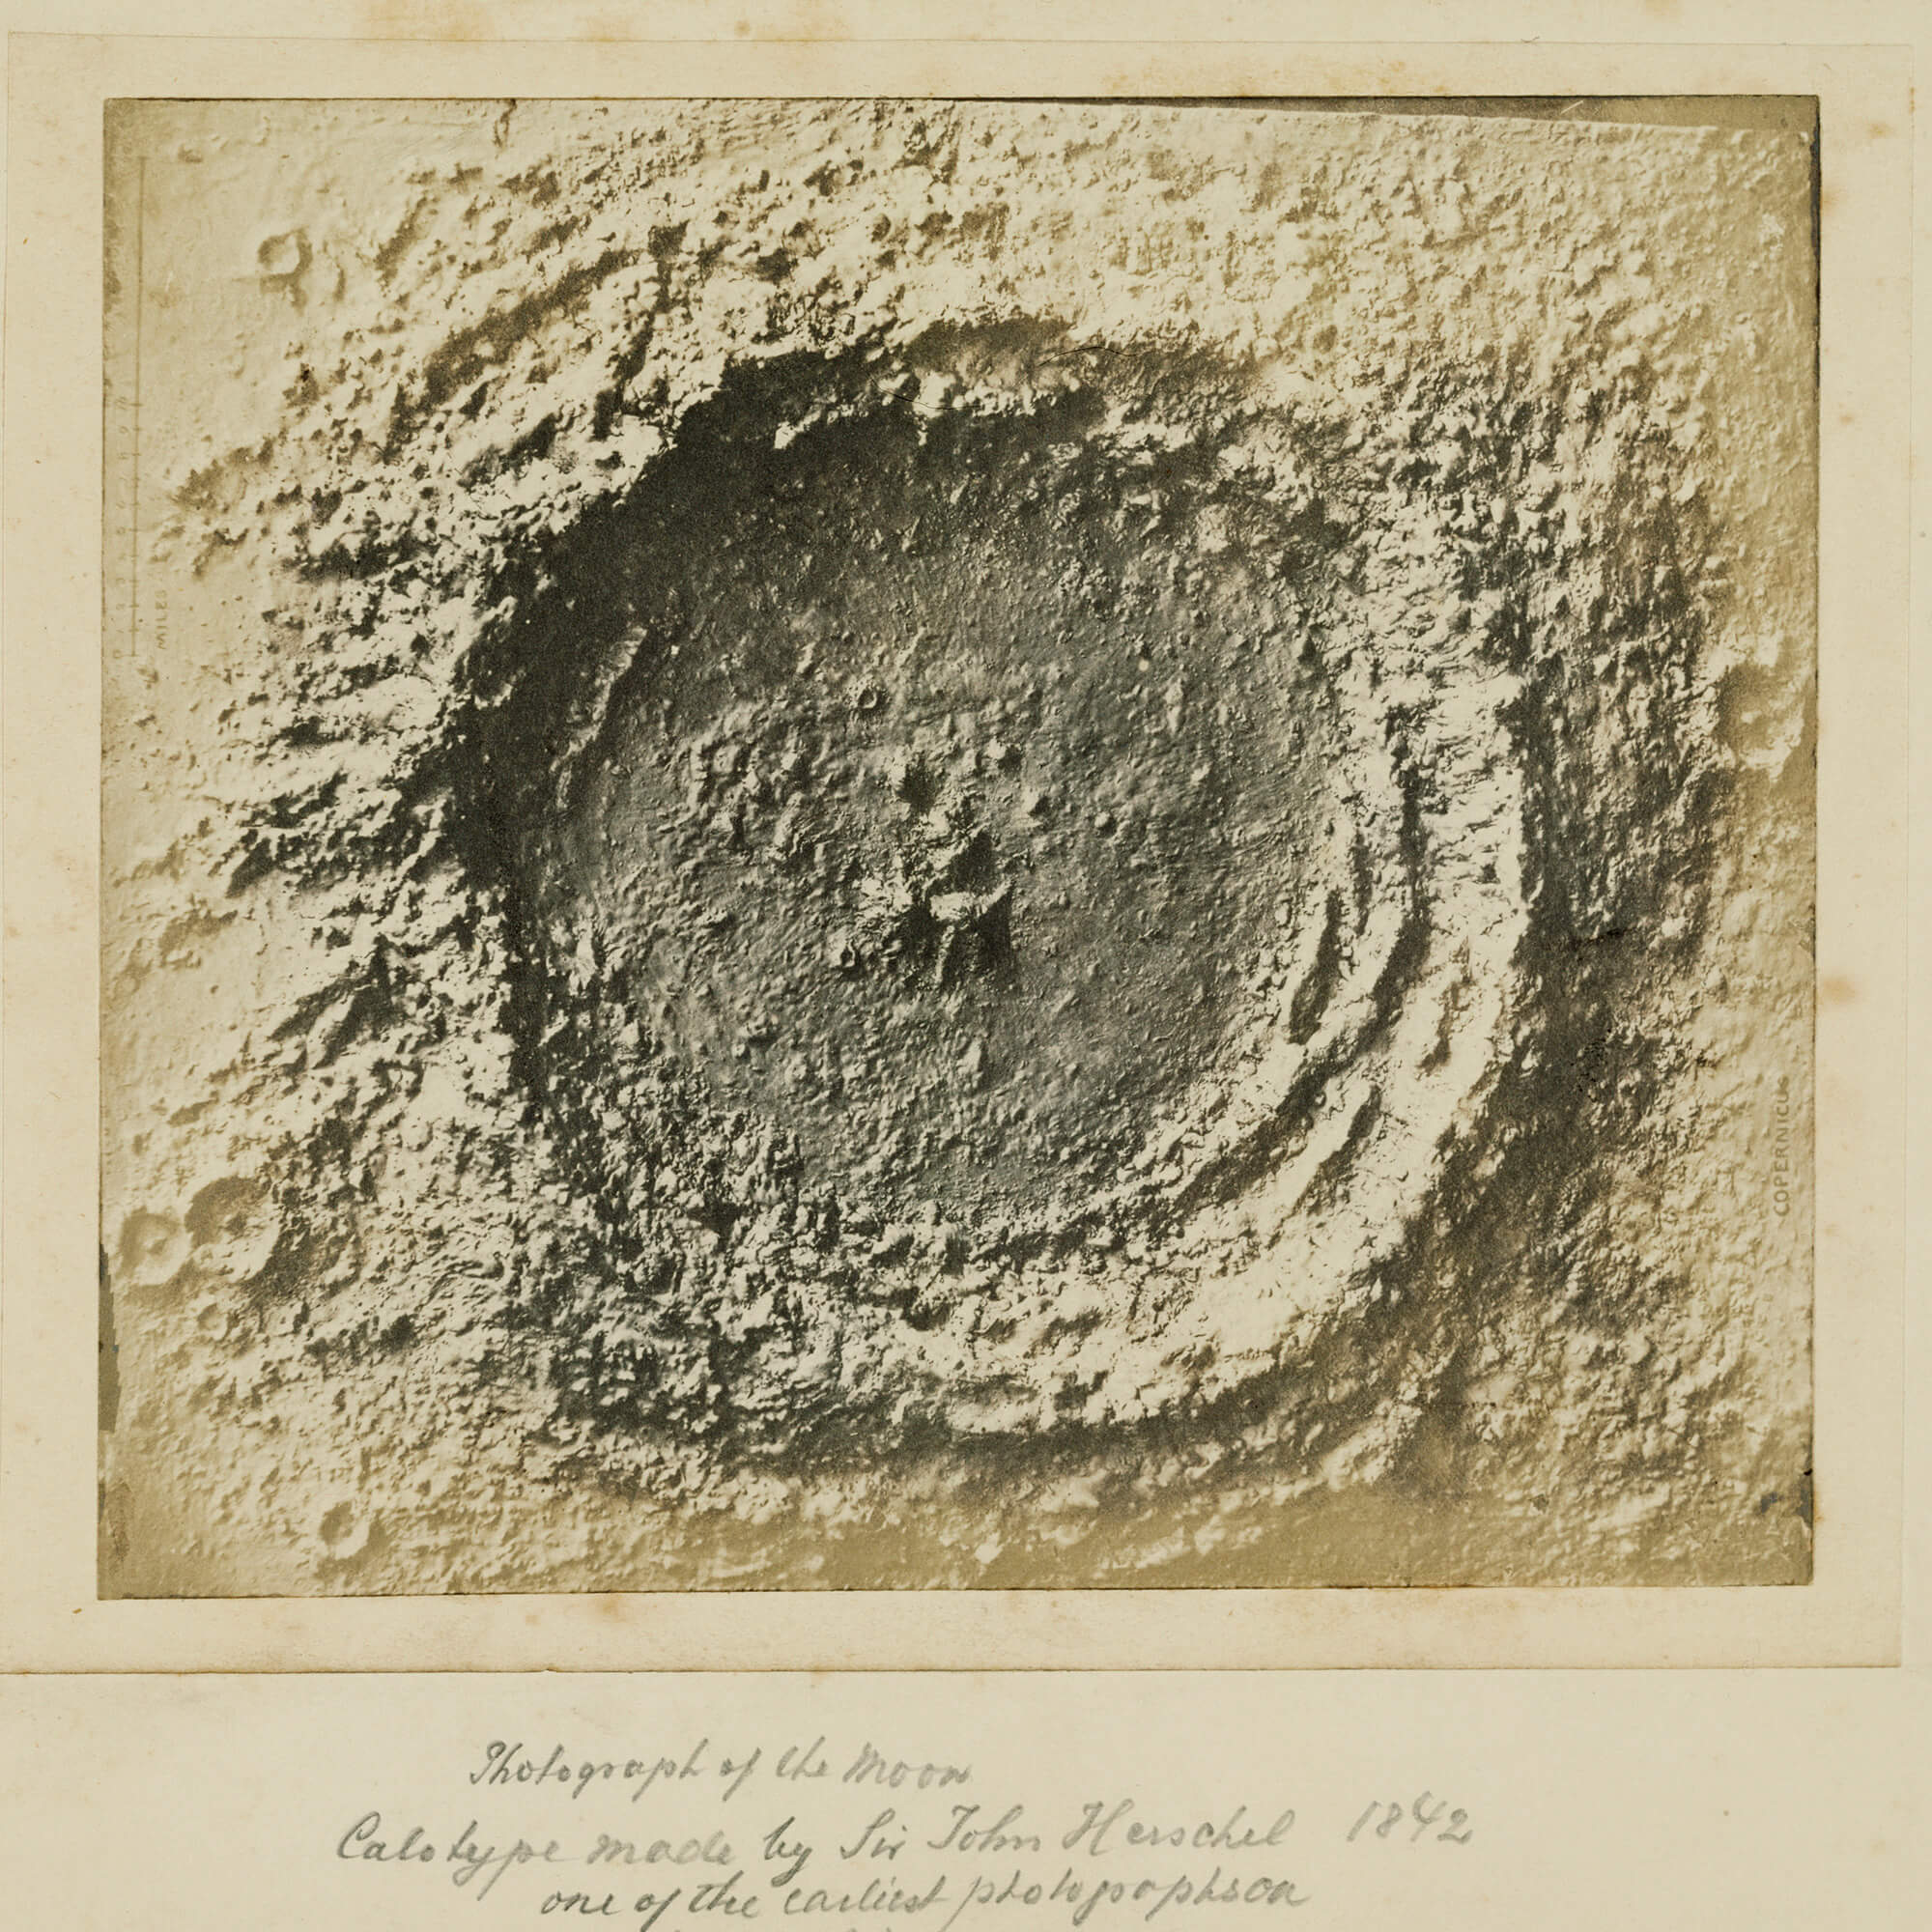 Herschel's photograph of a moon crater